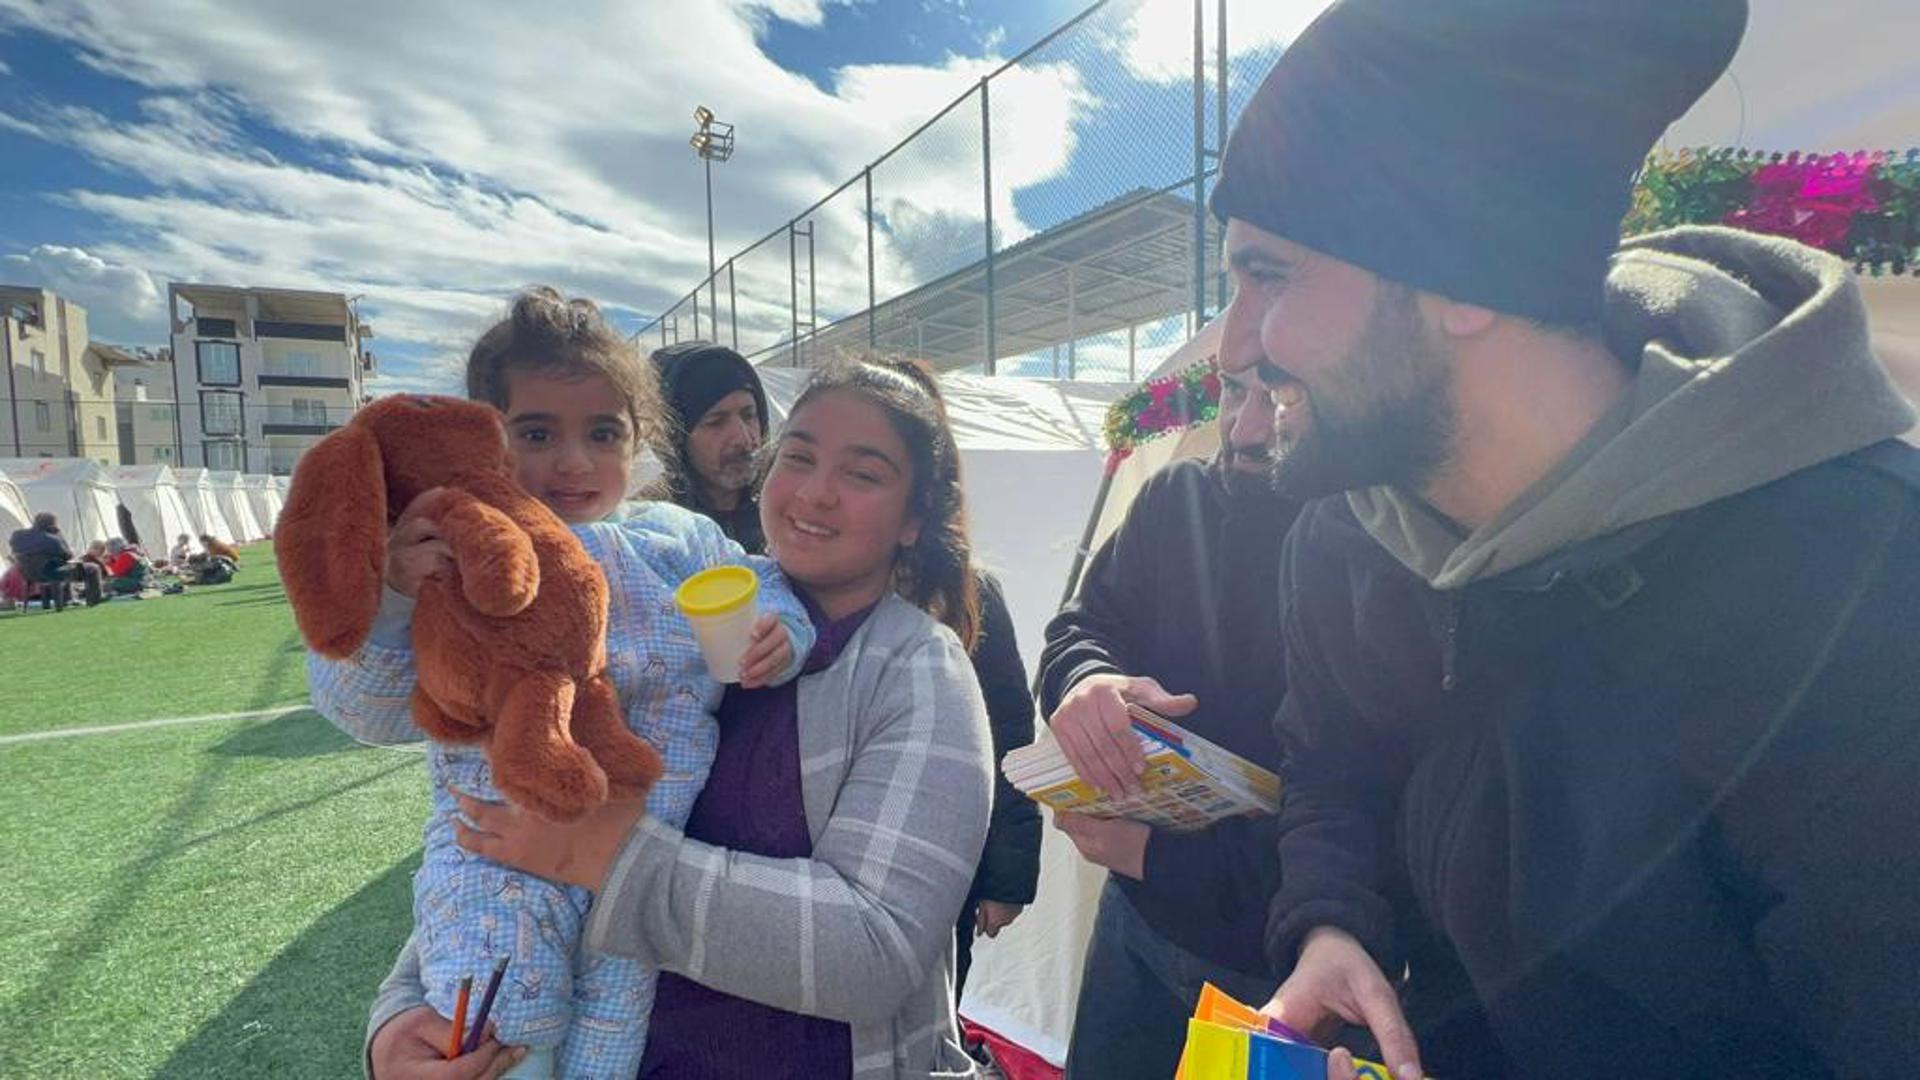 Auch das muss sein: Neben Essen und Kleidung bringen die Helfer aus Deutschland auch Spielzeug mit in die Zeltstädte. Ein kleines Mädchen freut sich ganz offensichtlich über seinen neuen Teddy.